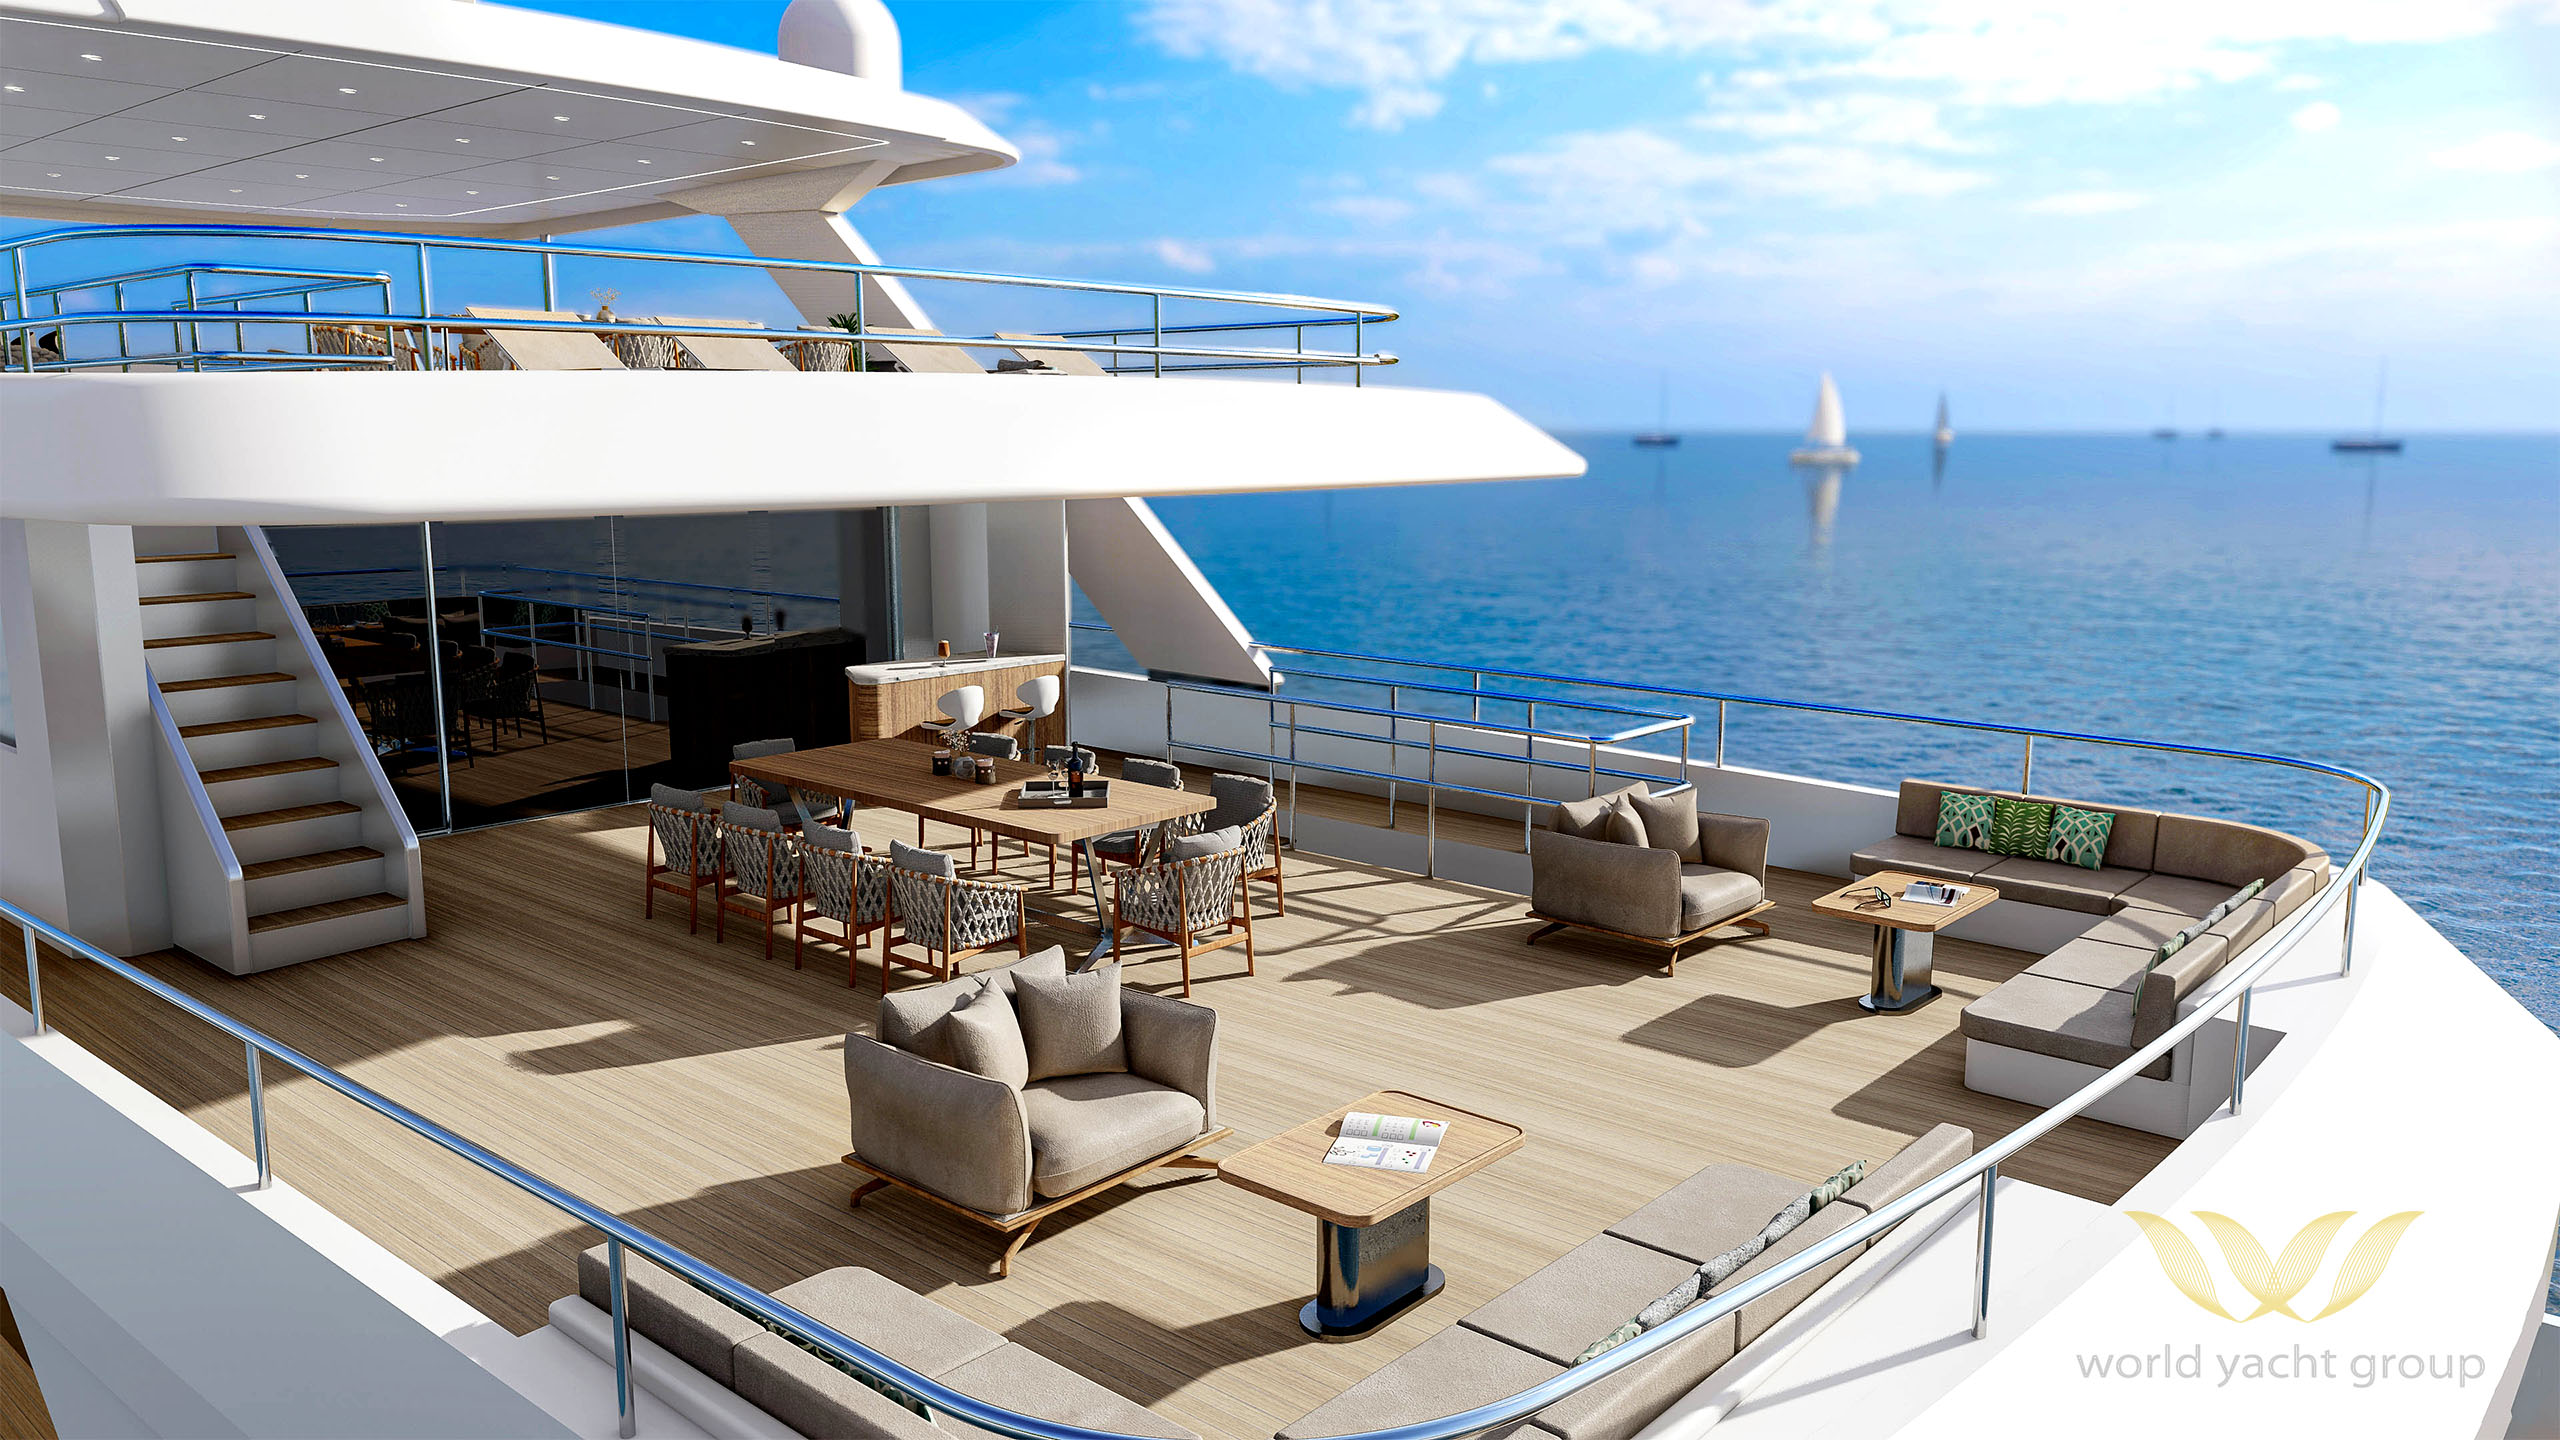 Project-Artemis-World-Yacht-Group-Yacht-For-Sale-Bridge-Deck